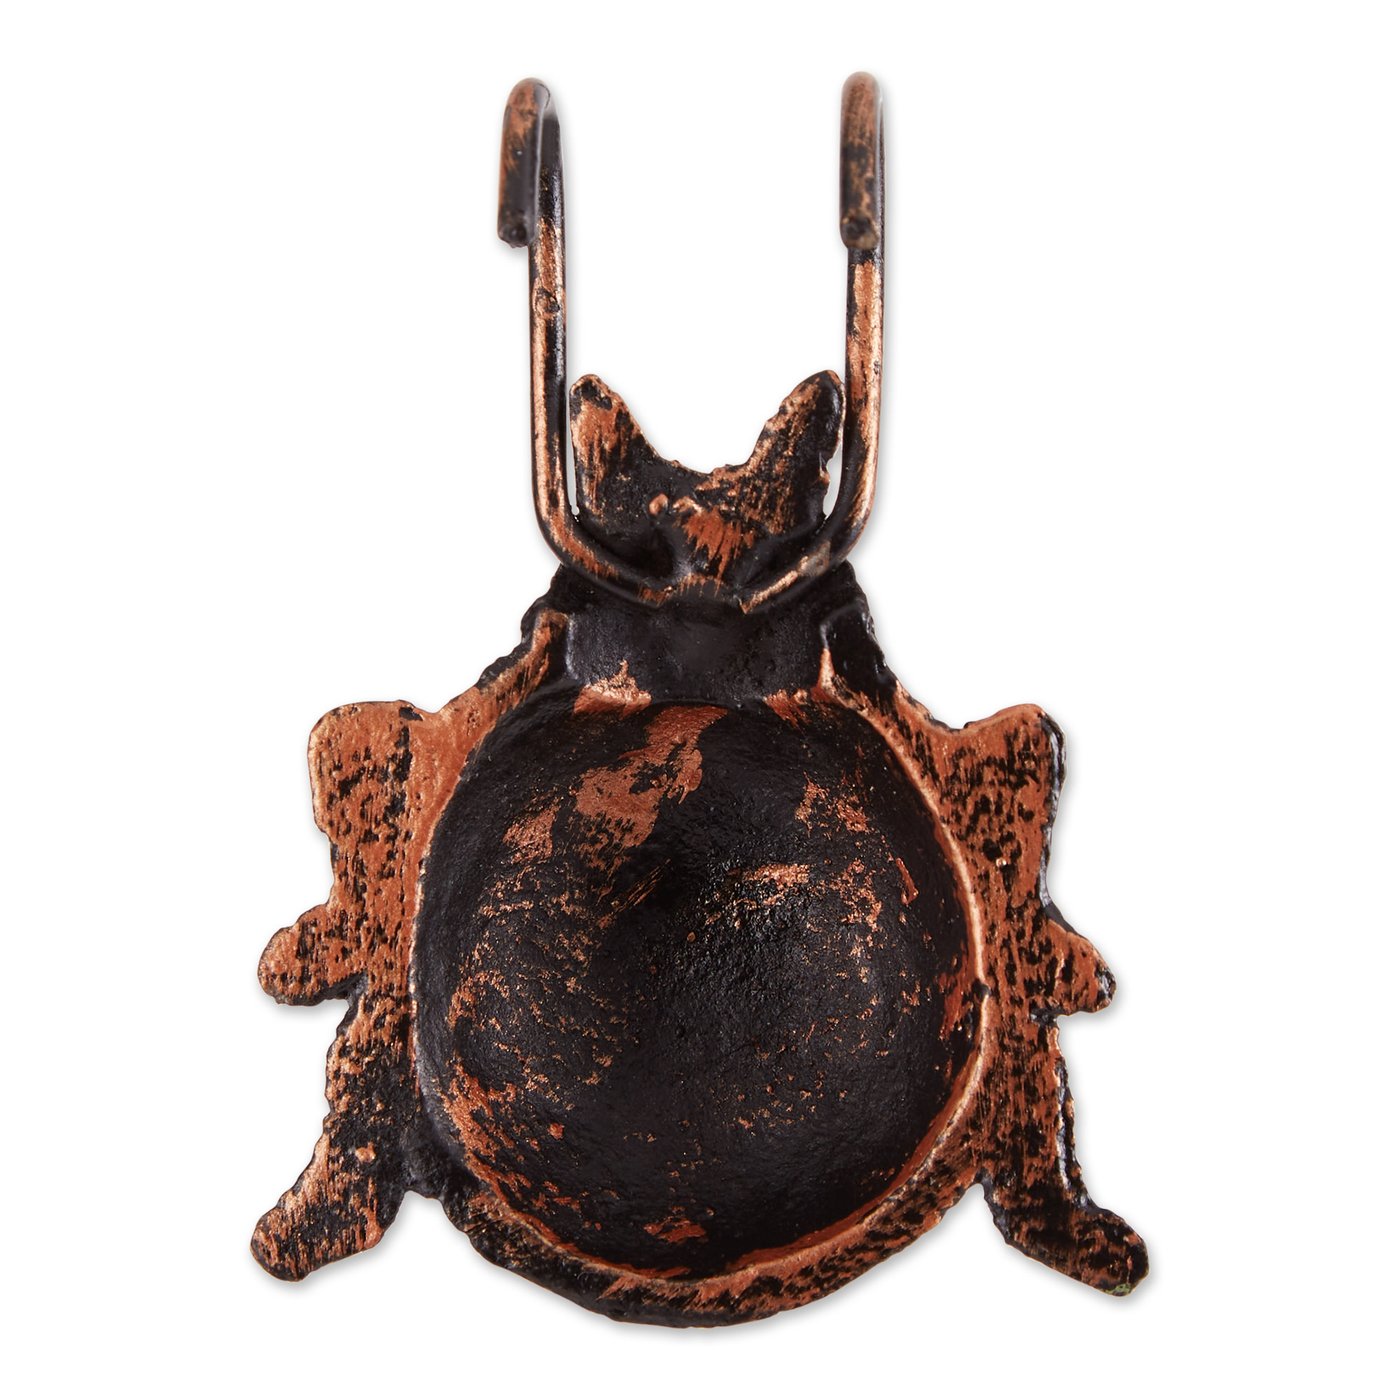 Ladybug Cast Iron Pot Hanger Set Of 4